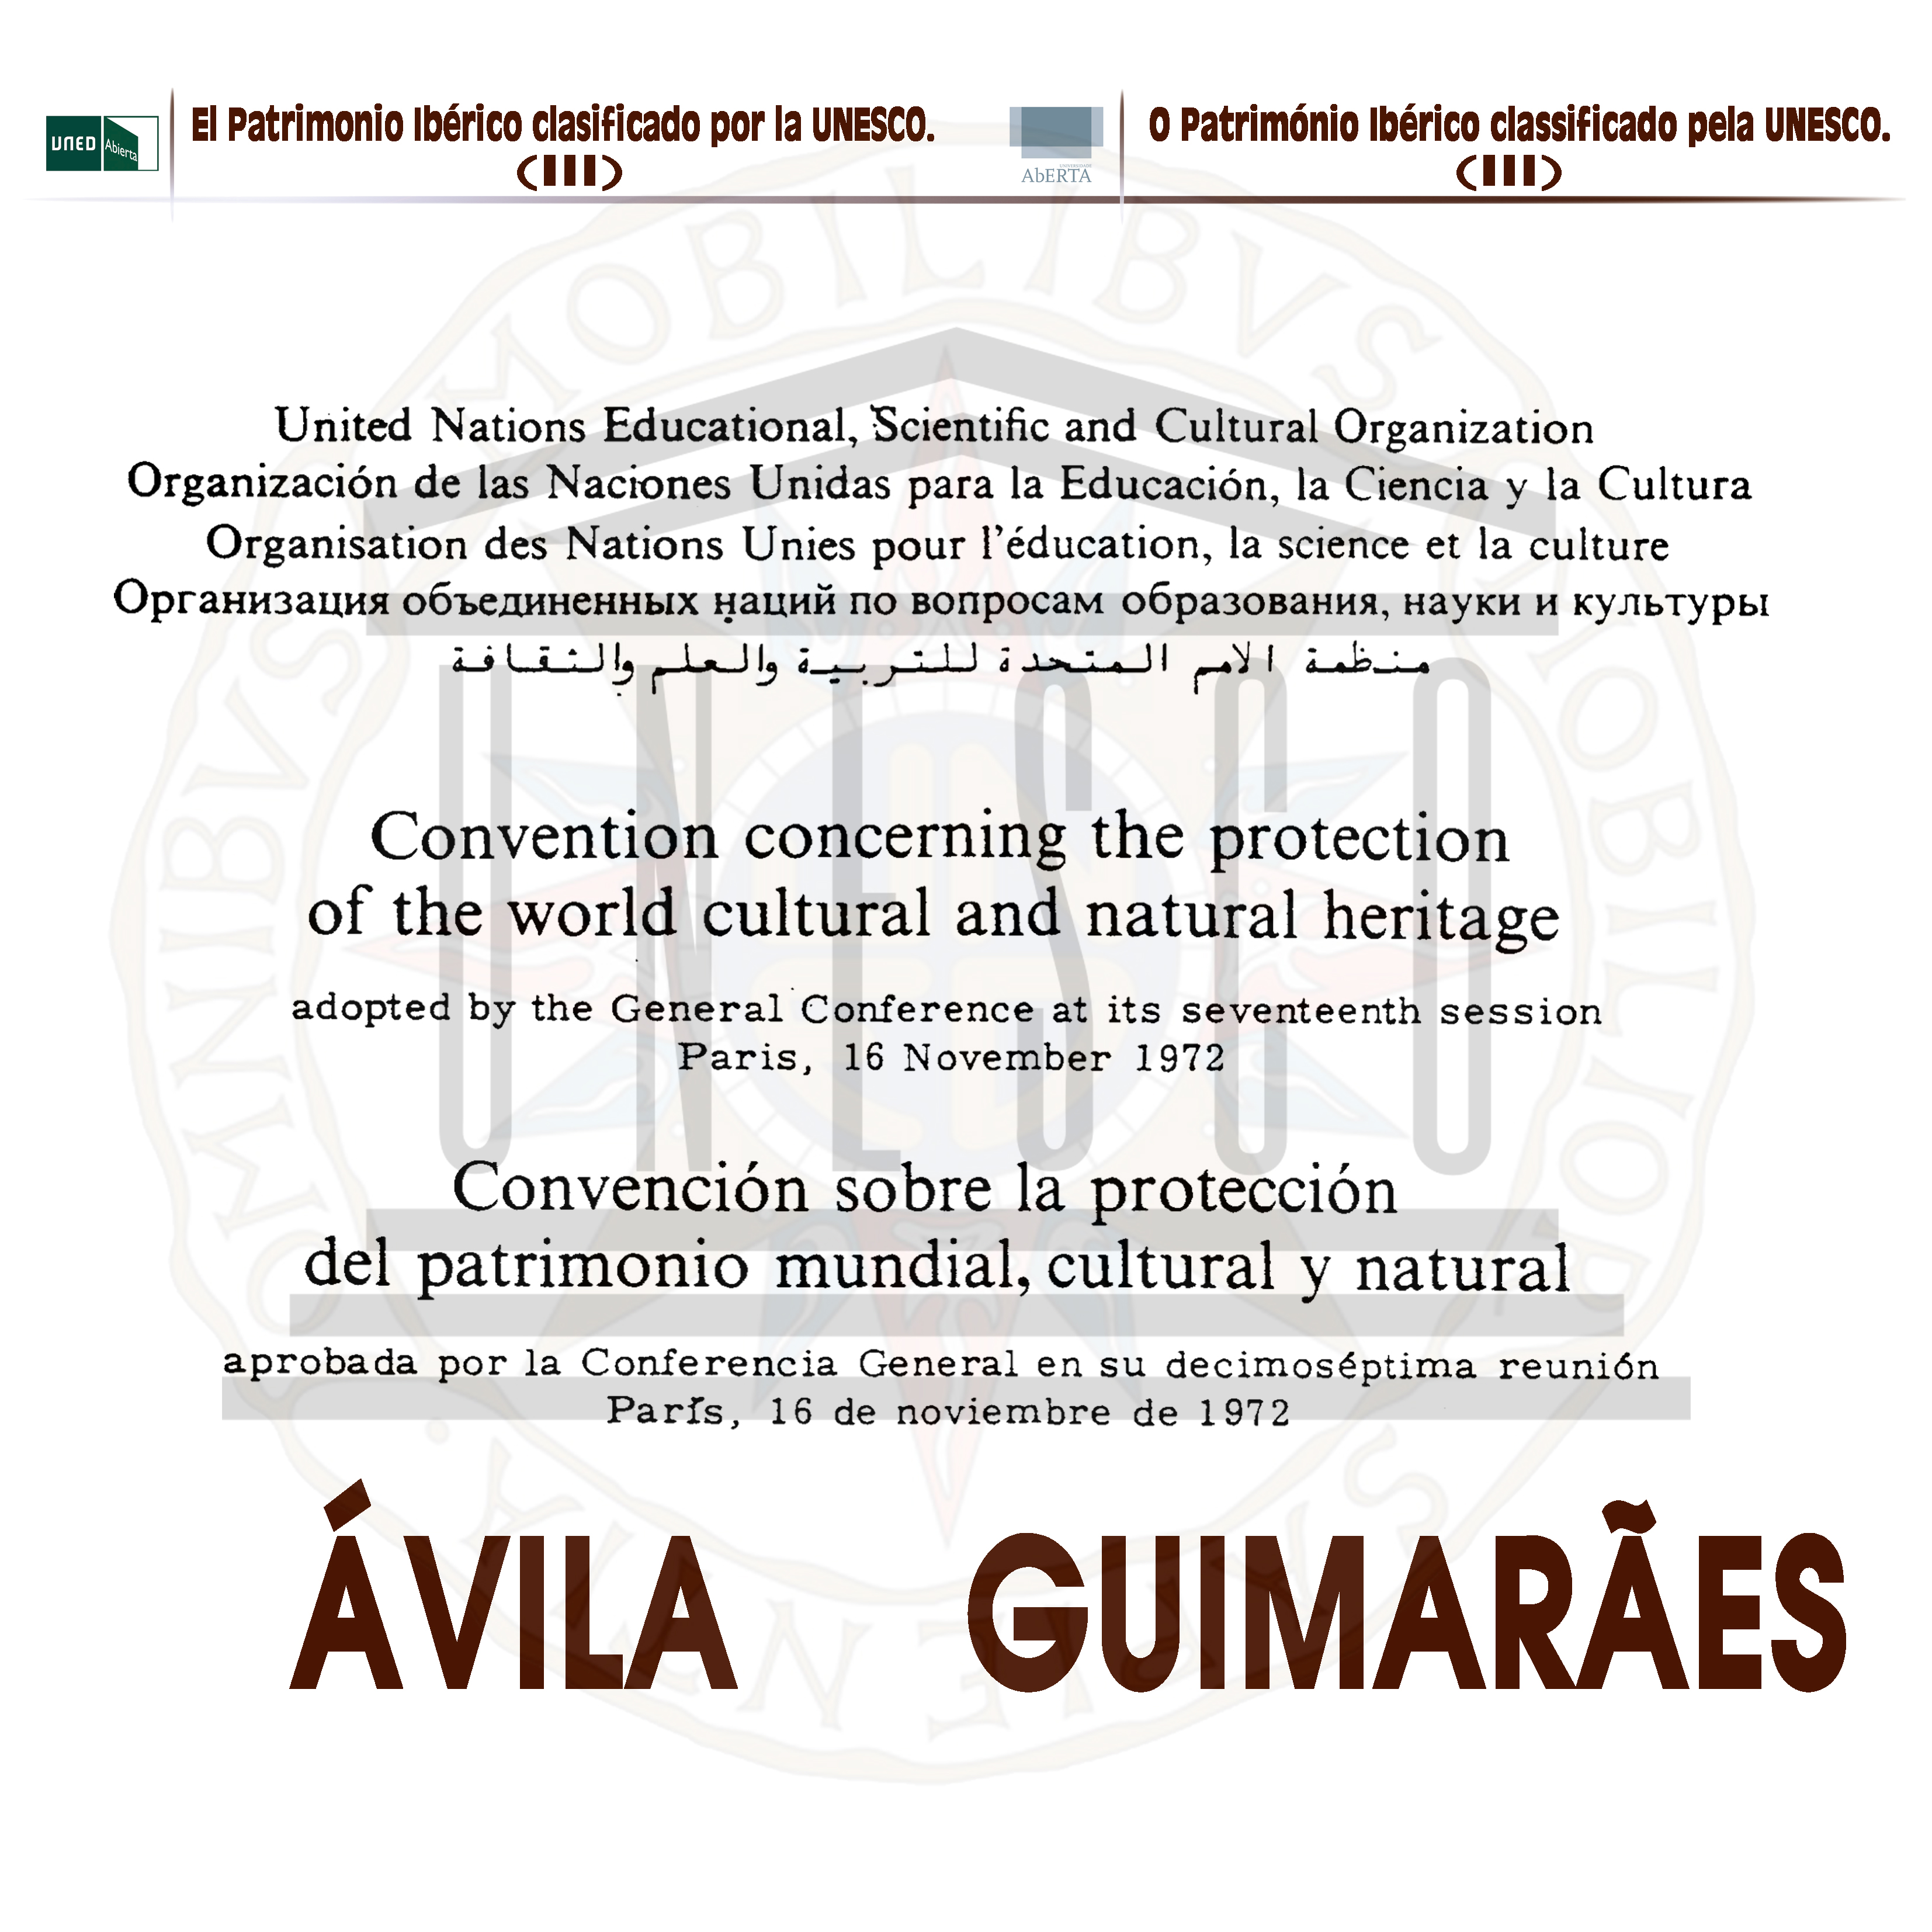 El Patrimonio Ibérico clasificado por la UNESCO (III). Estudios de caso: Avila y Guimarâes (1ed. 2023) UNESCO3_001